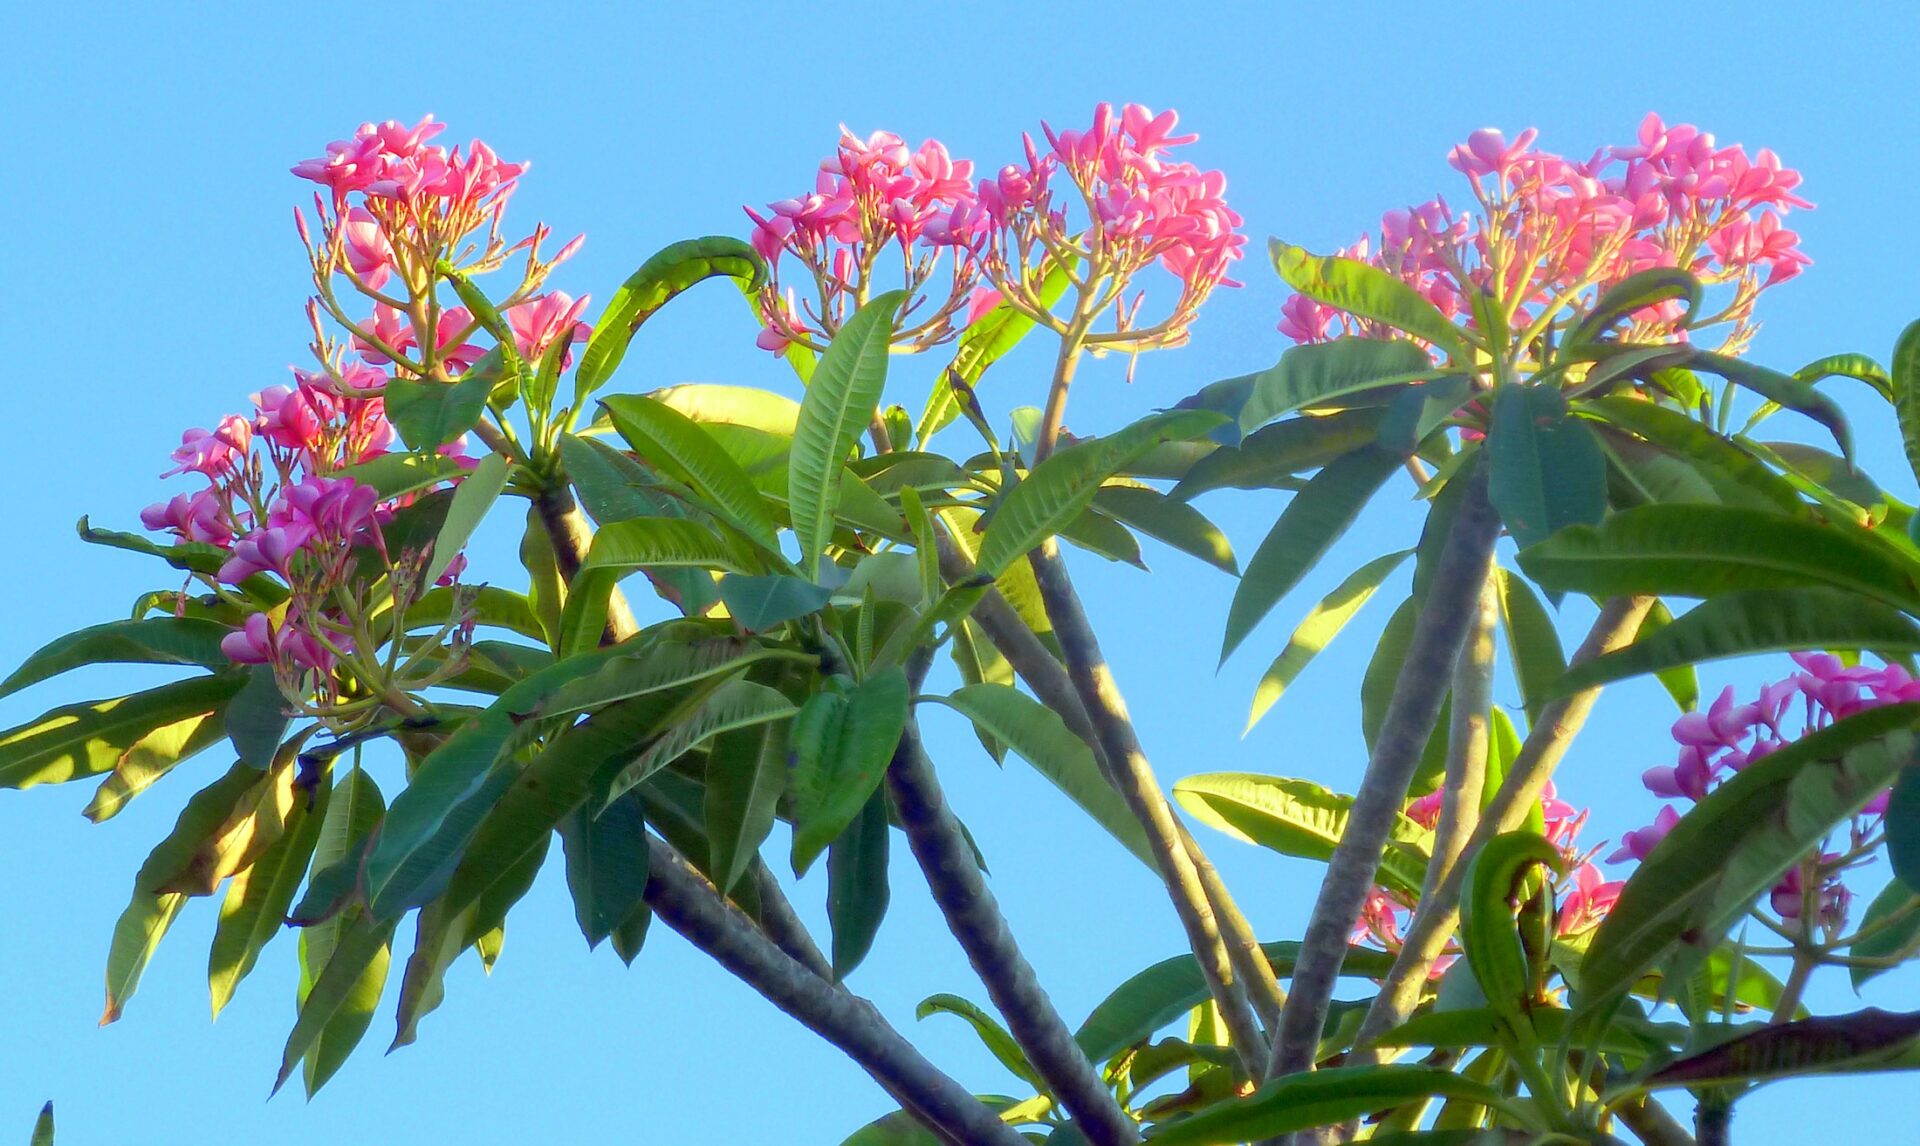 Plumeria or Frangipani